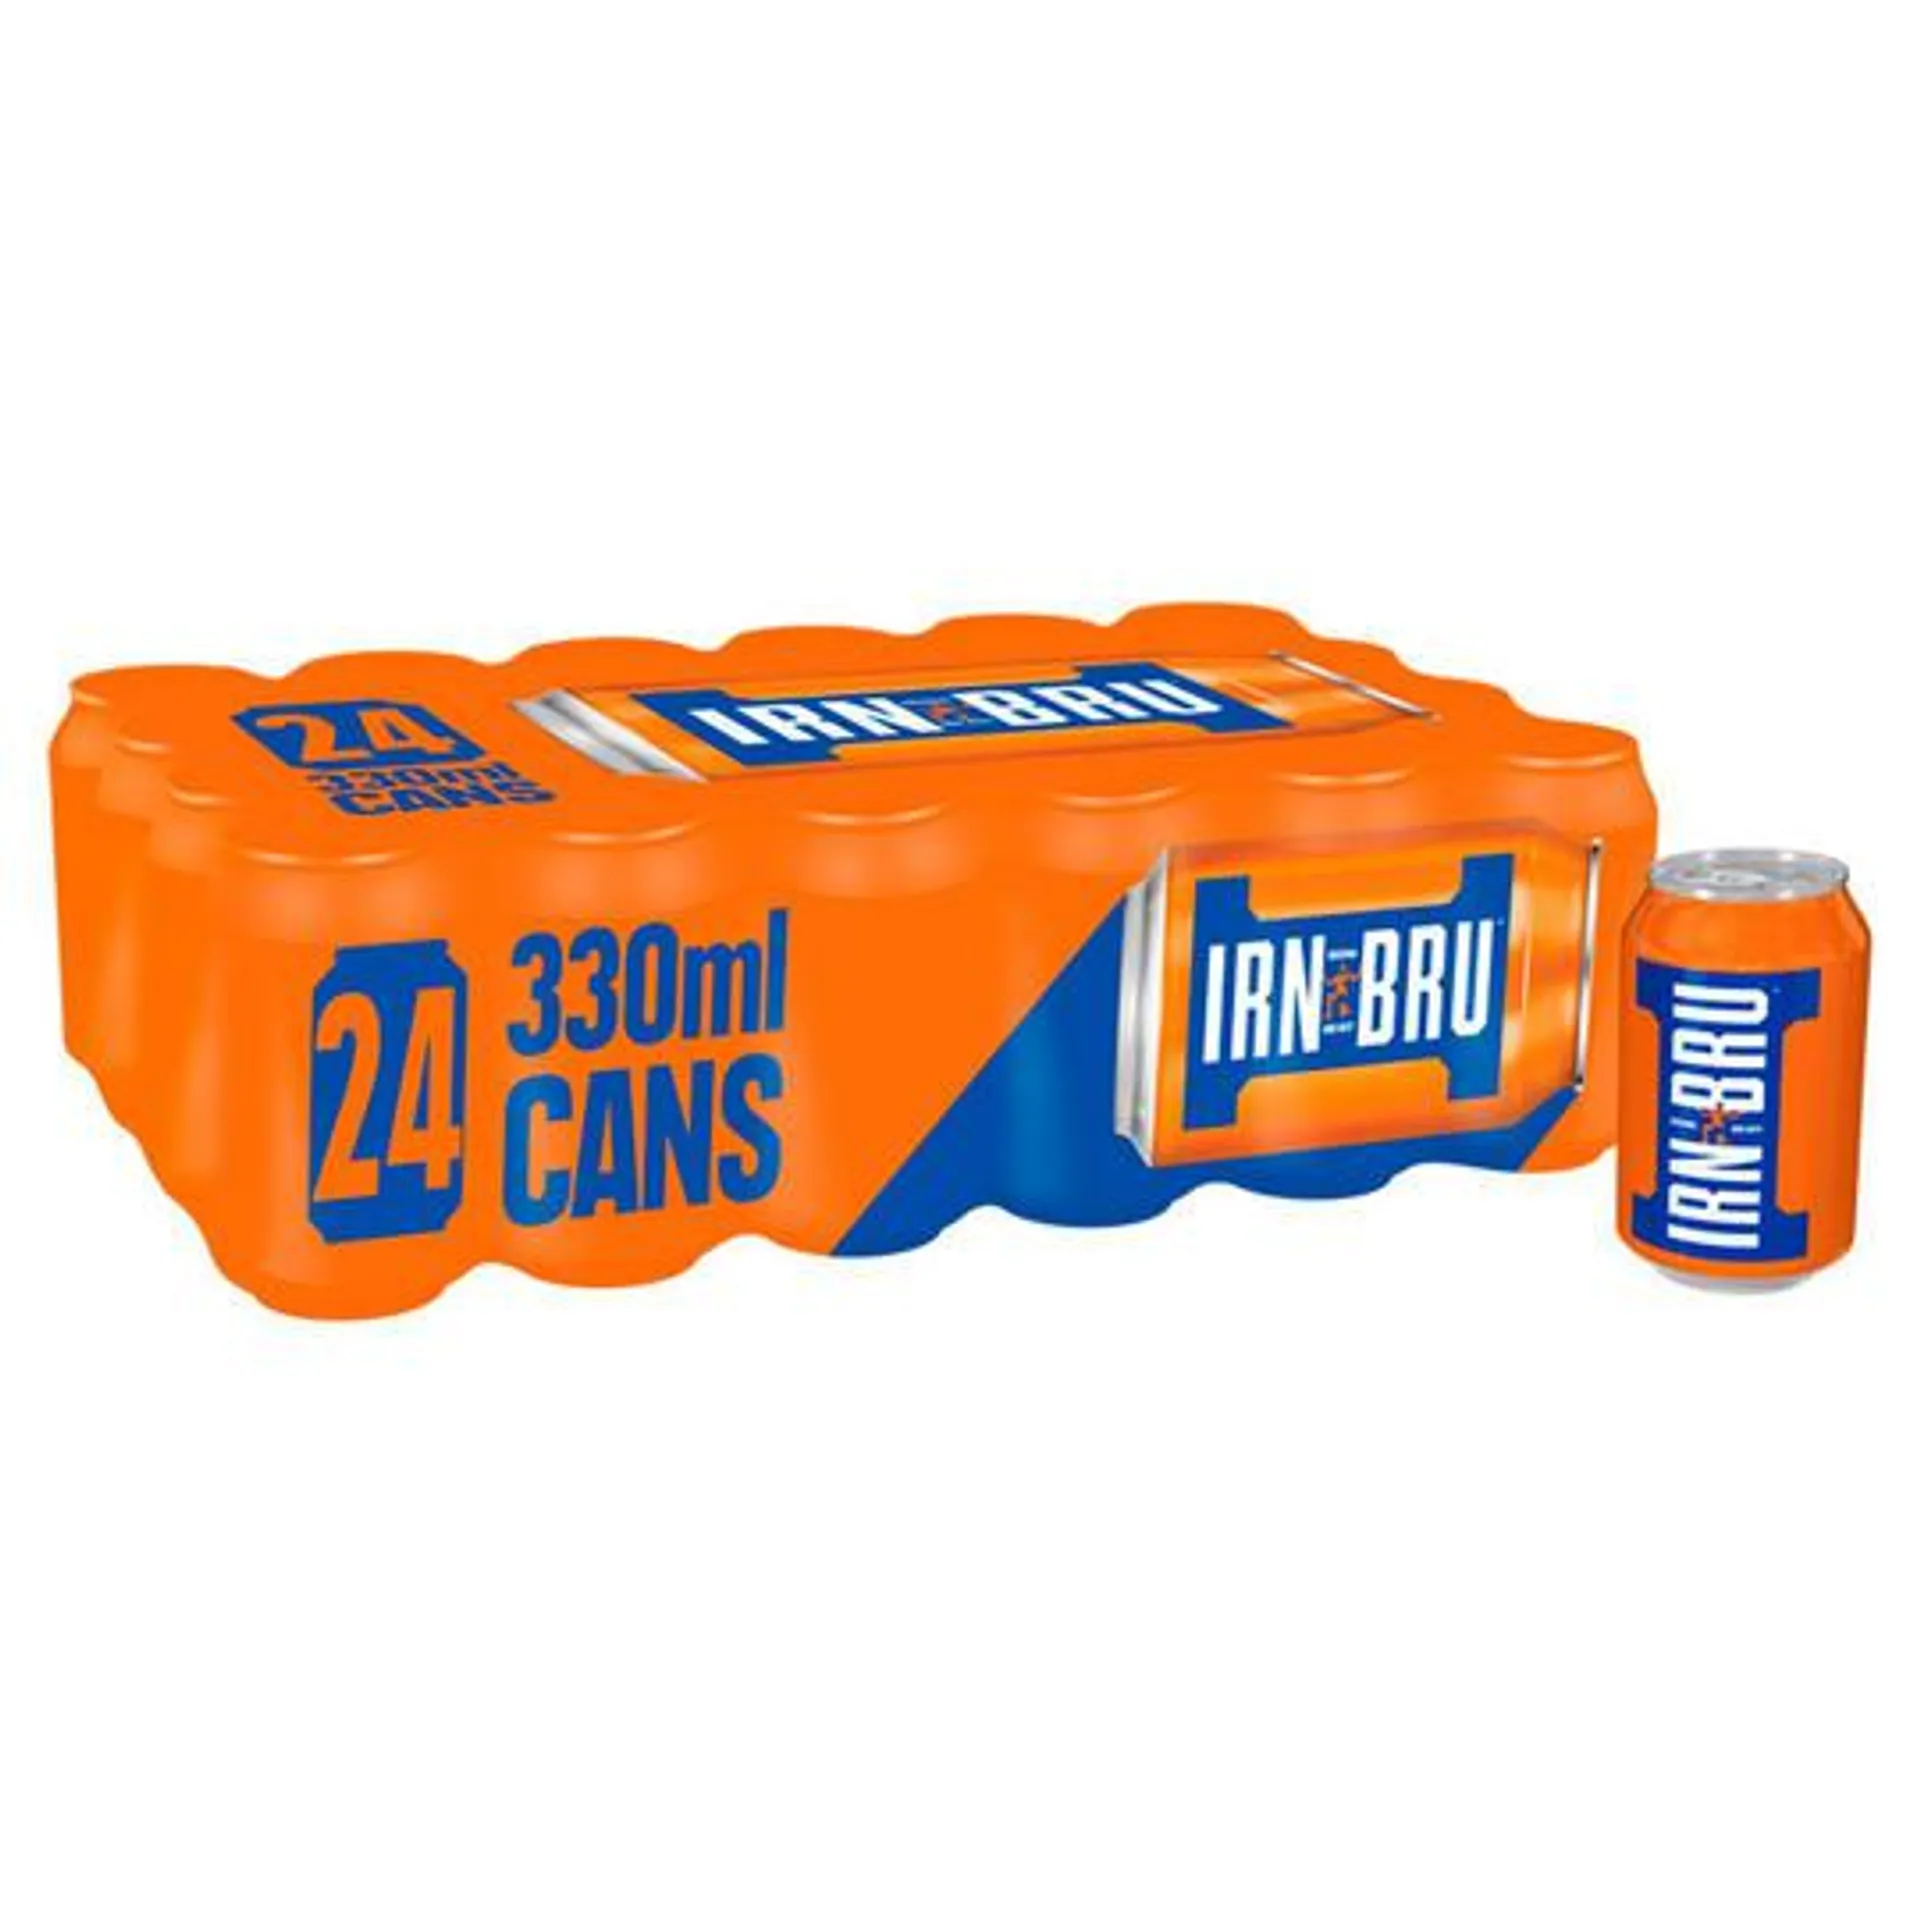 IRN-BRU Soft Drink 24 x 330ml Cans